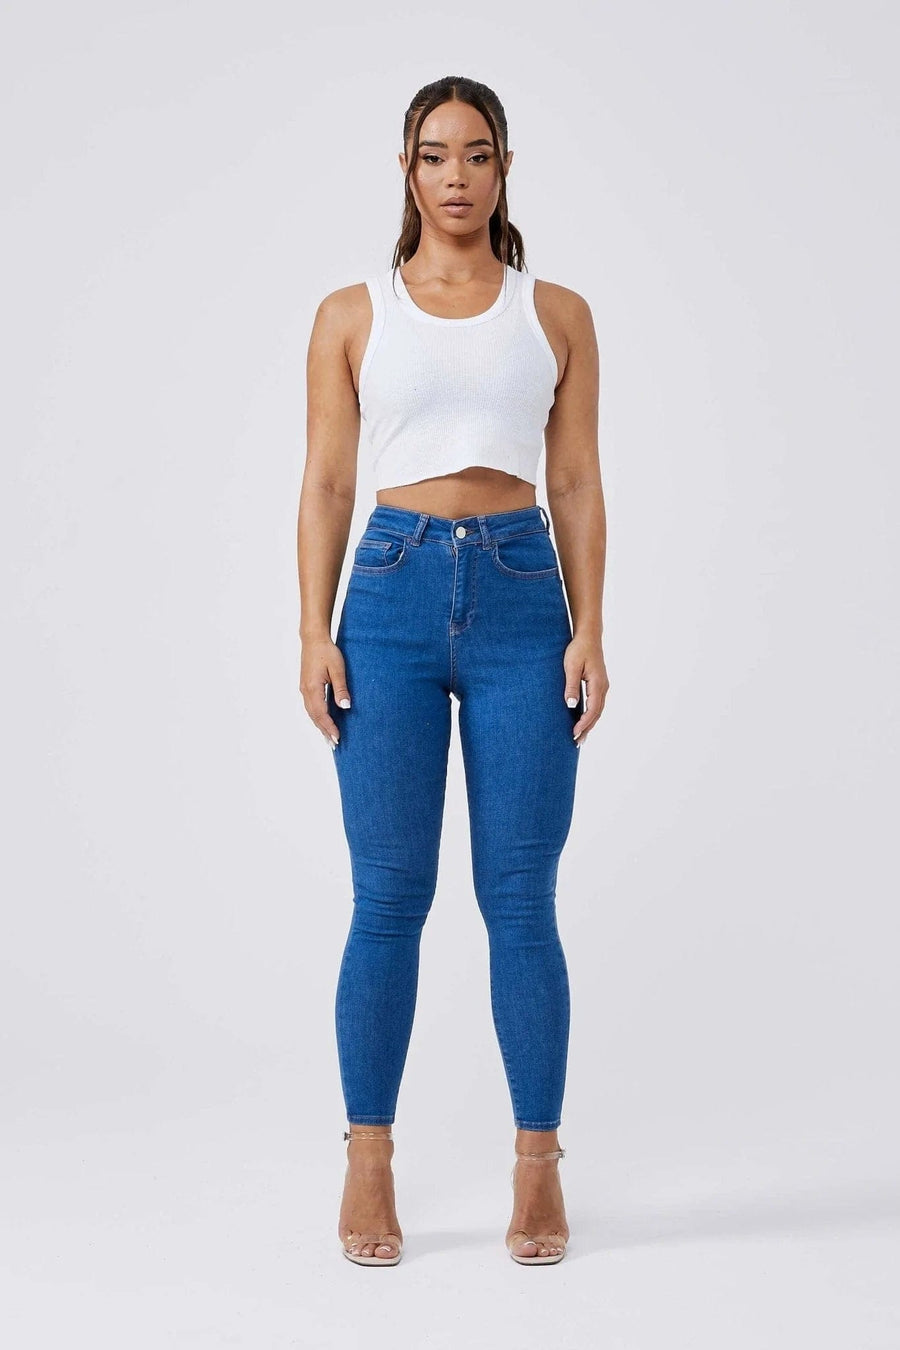 Legend London Womens Jeans SKINNY JEANS - AZURE BLUE